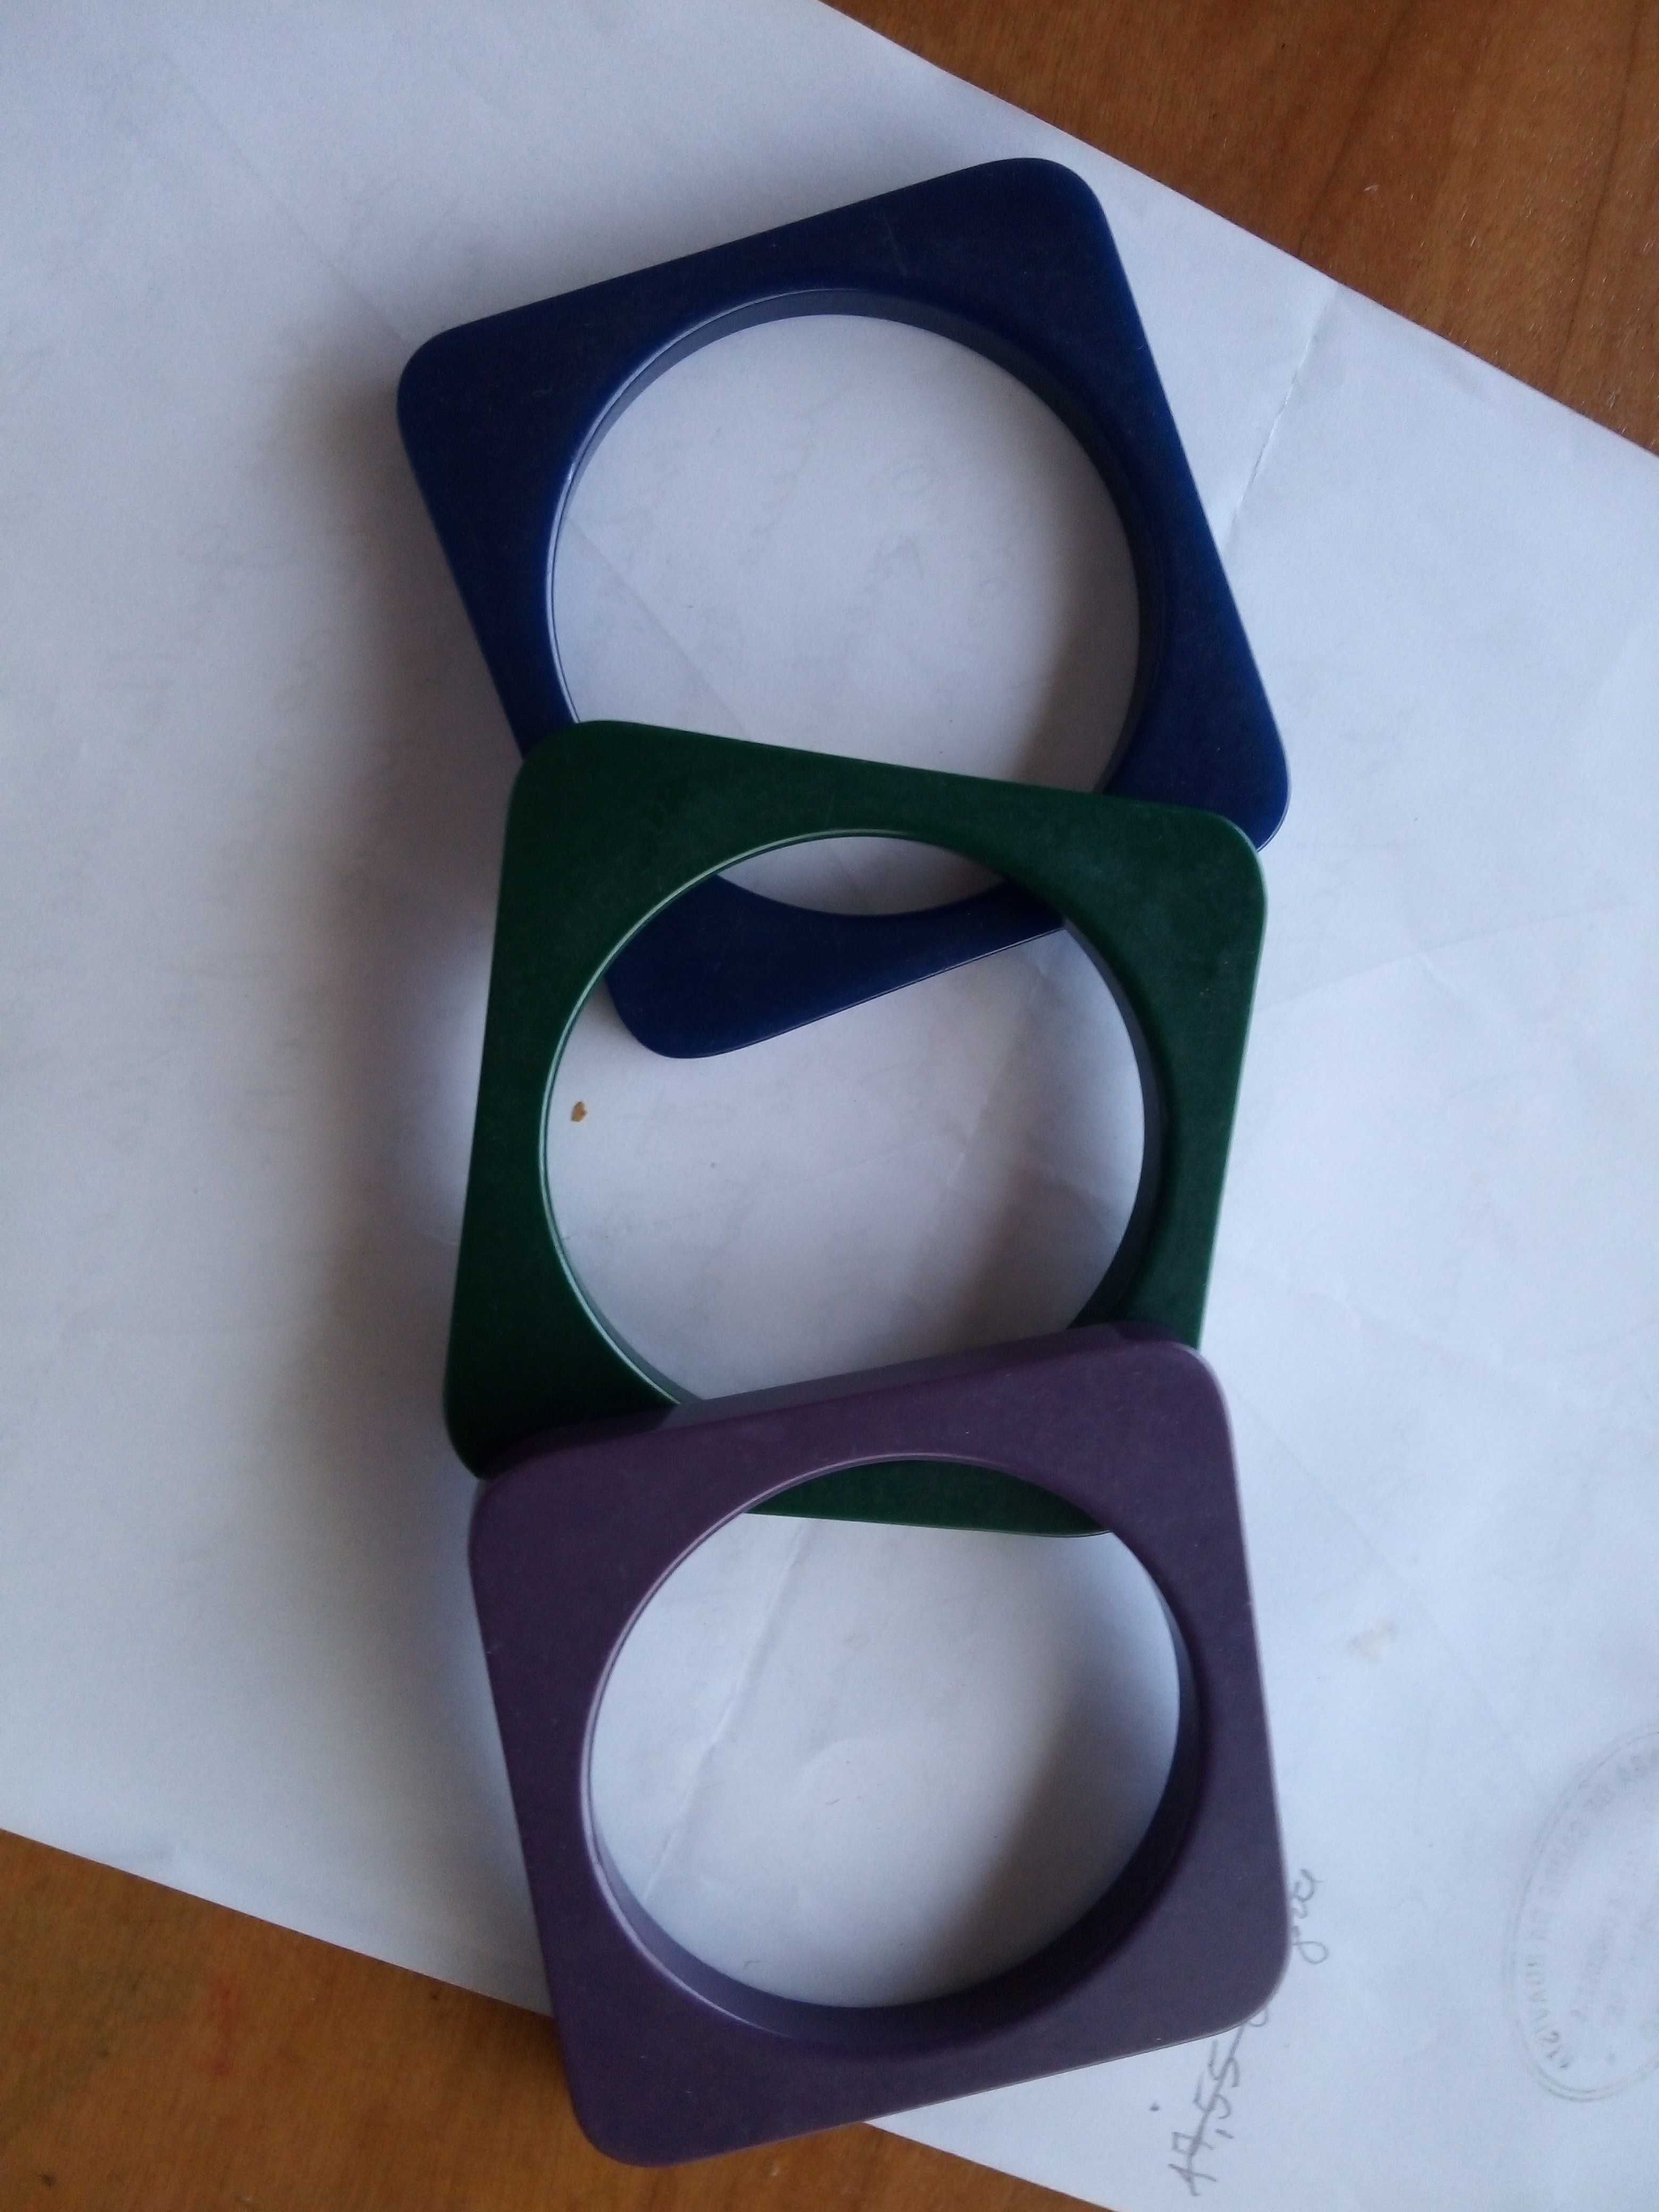 Pulseiras de três cores com formato quadrangular